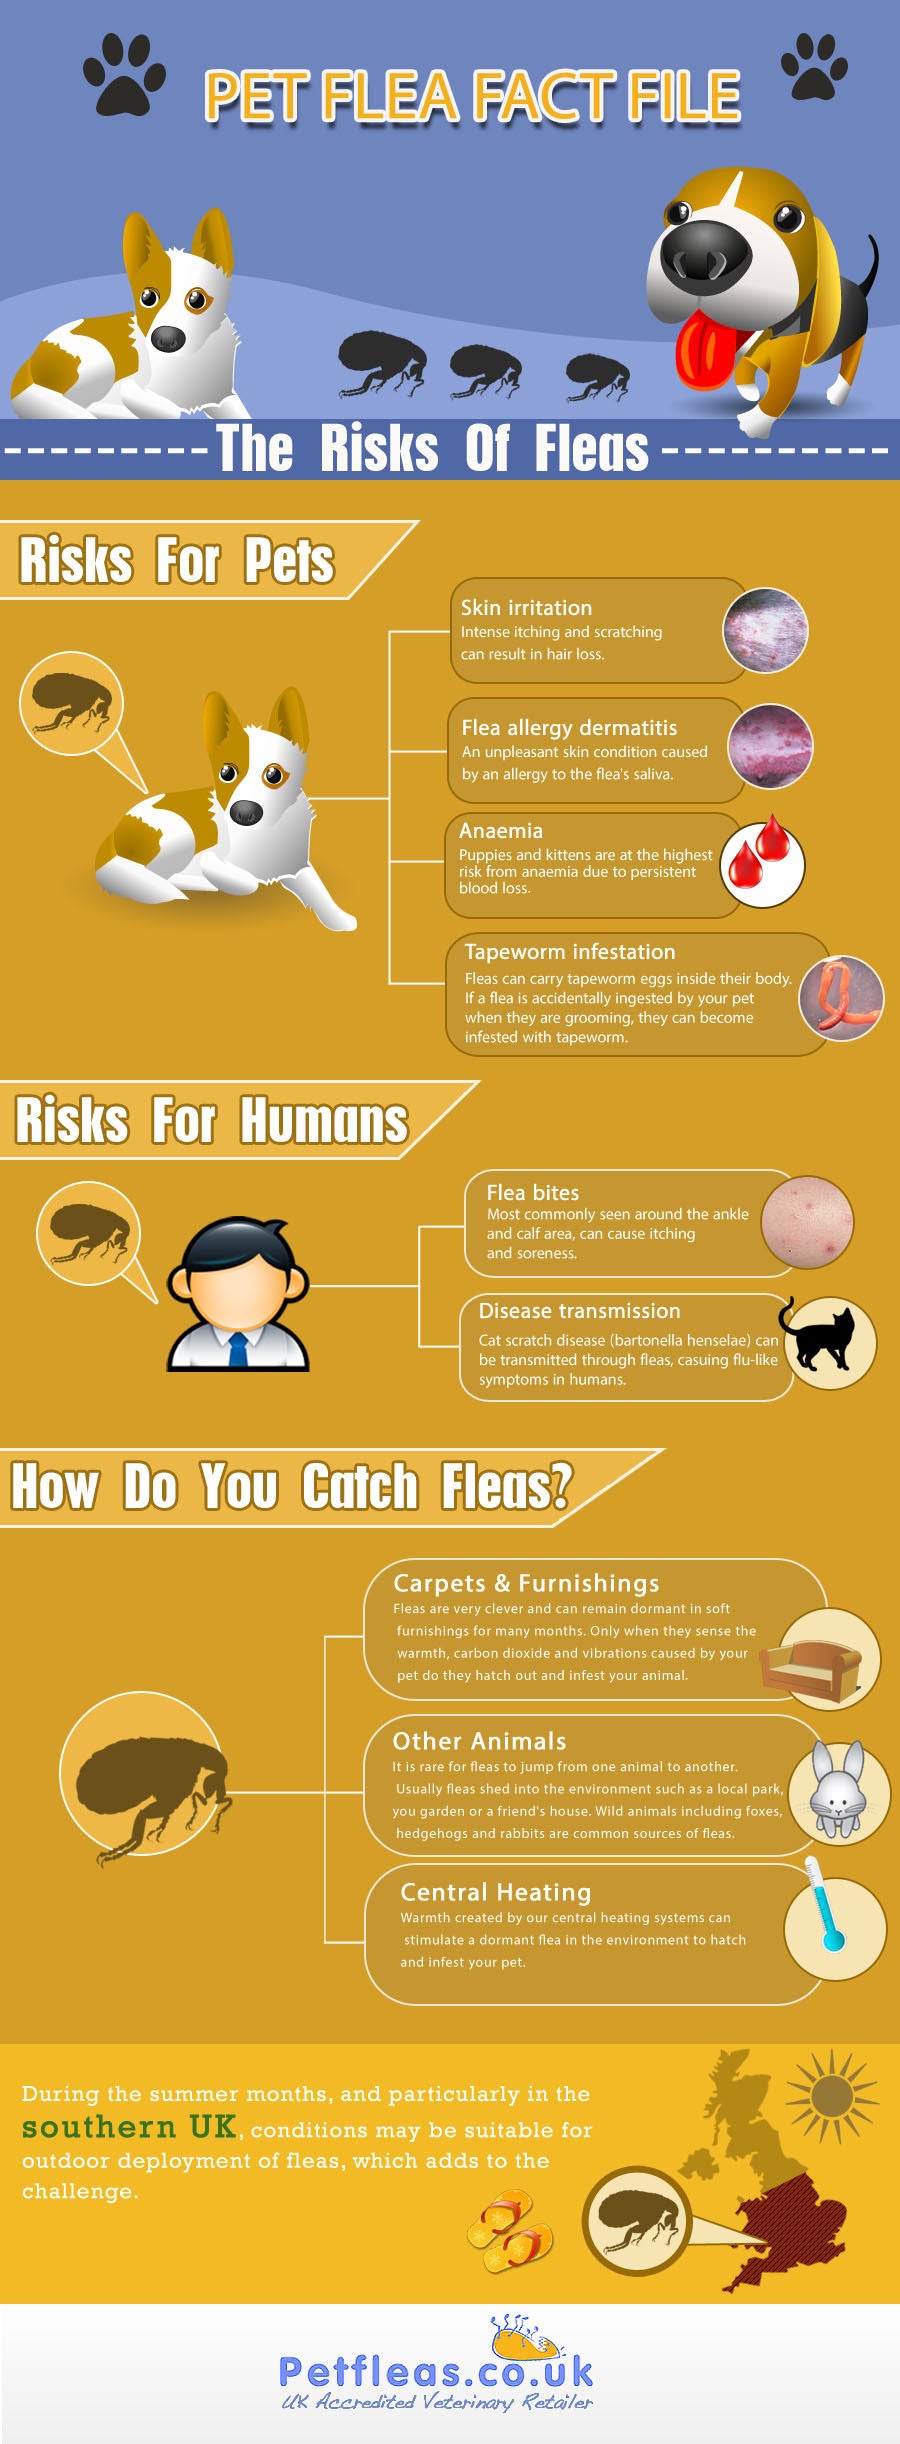 Pet Flea Fact File